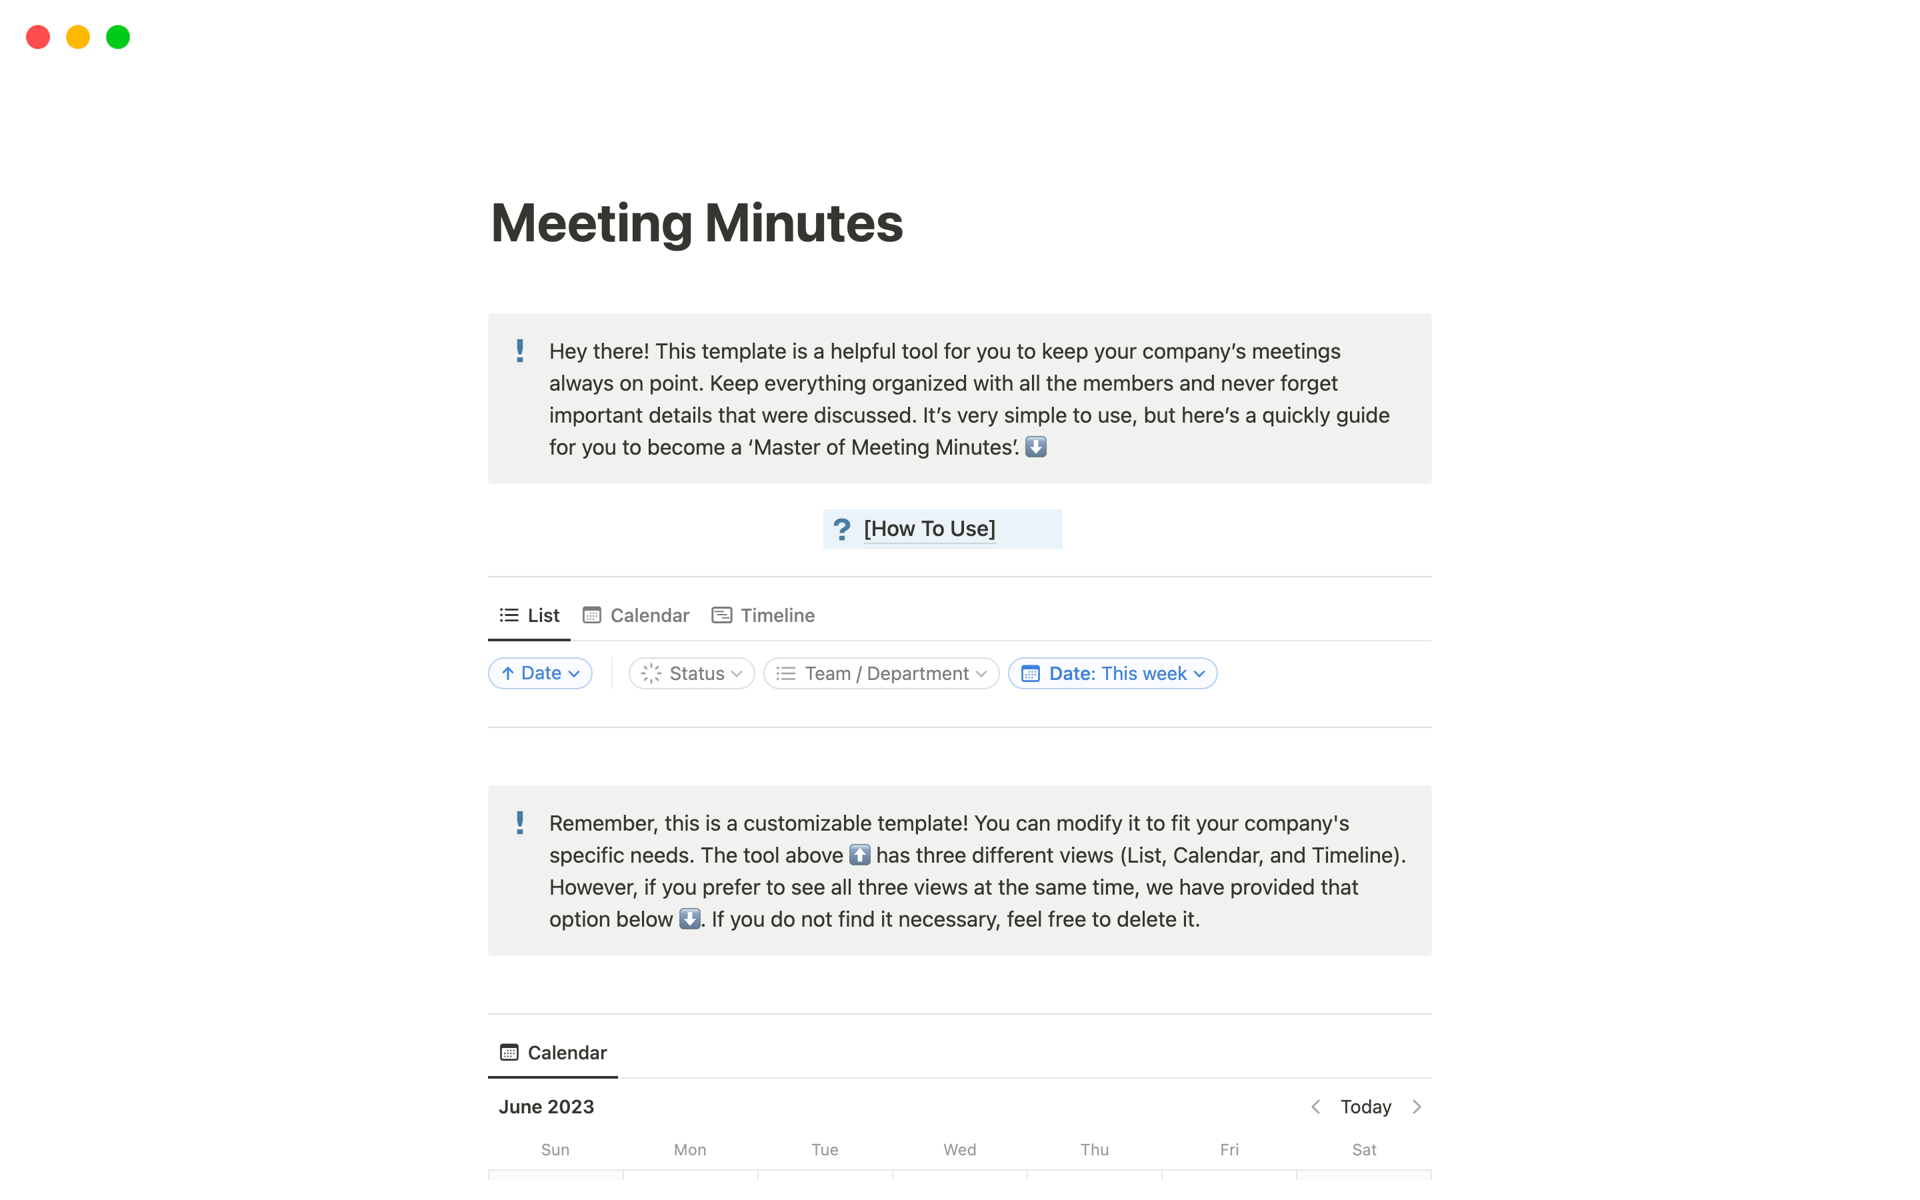 Vista previa de una plantilla para Meeting Minutes